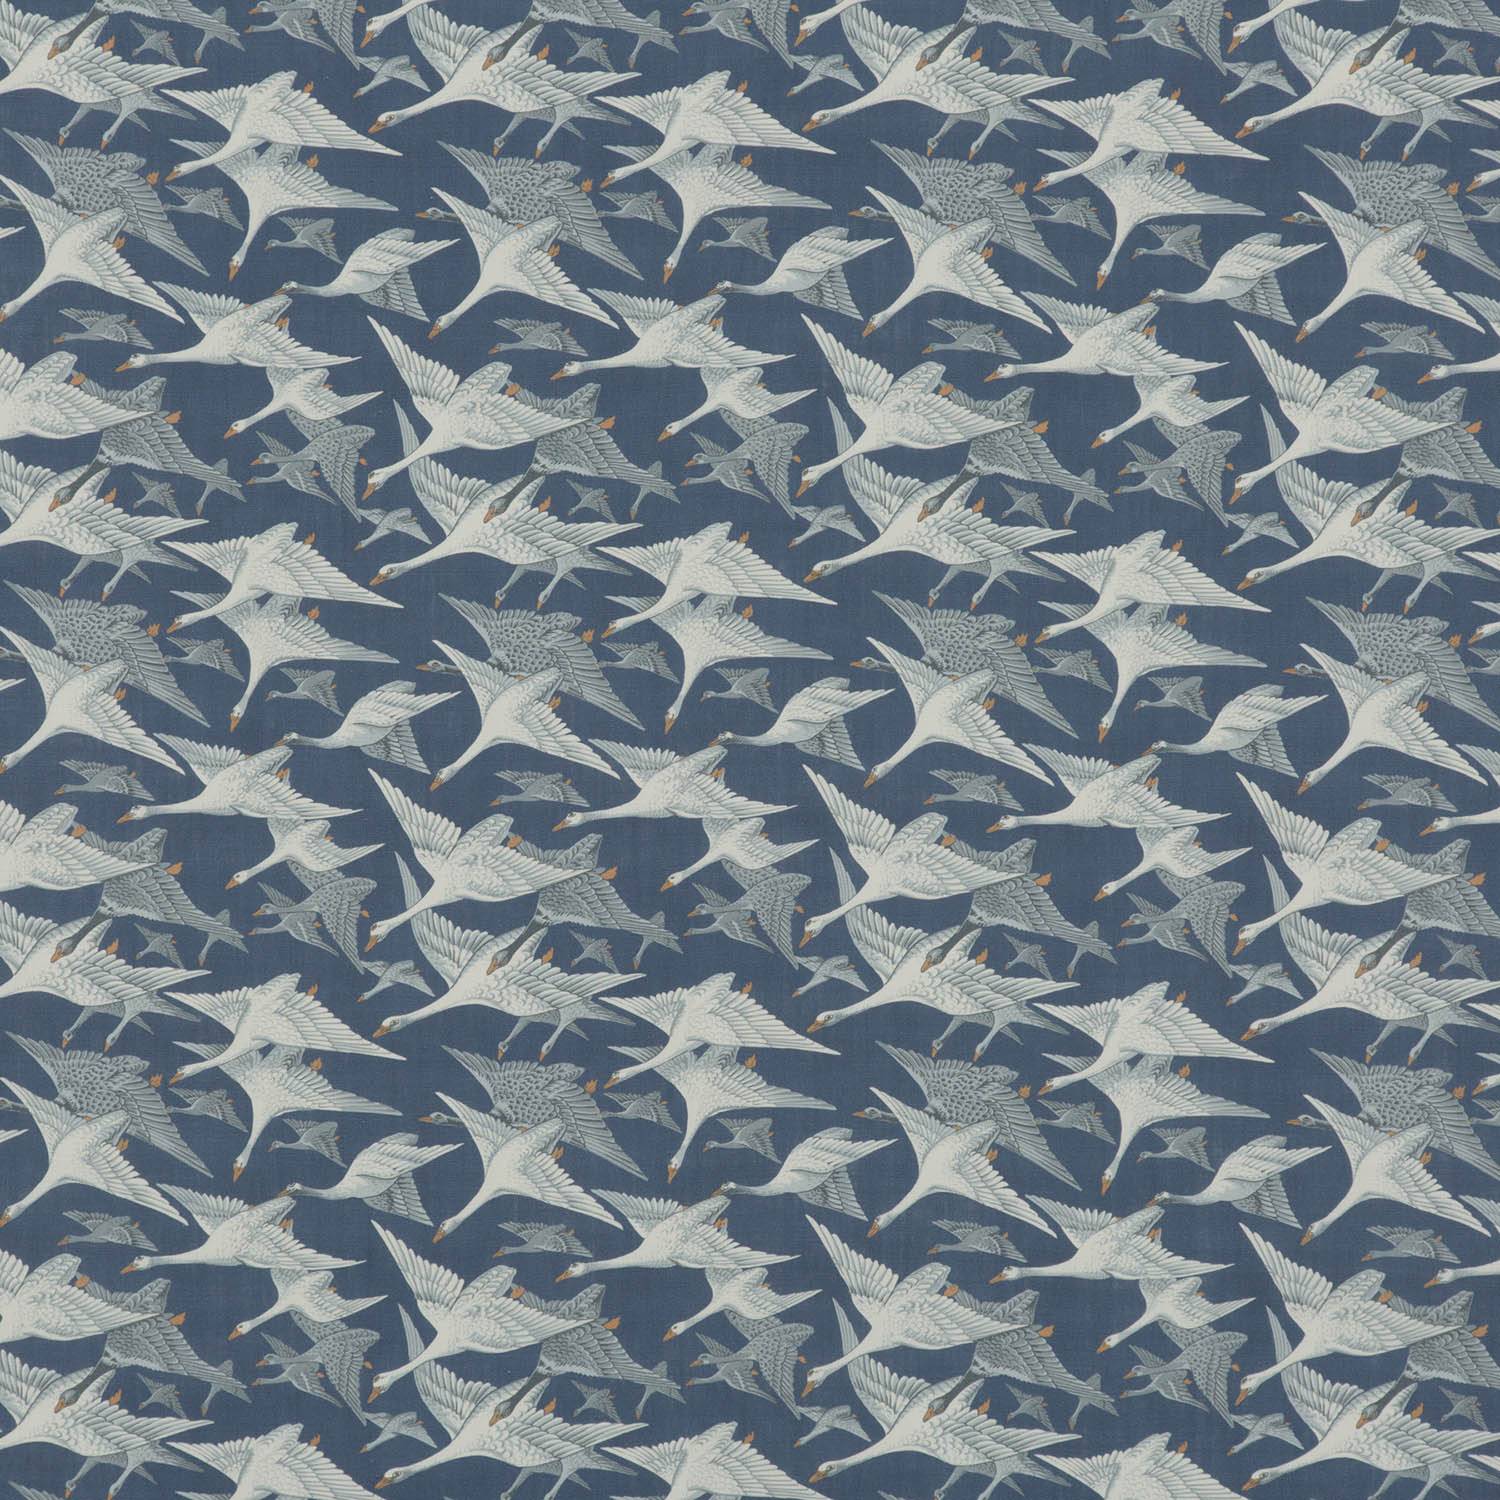 Wild Geese Linen